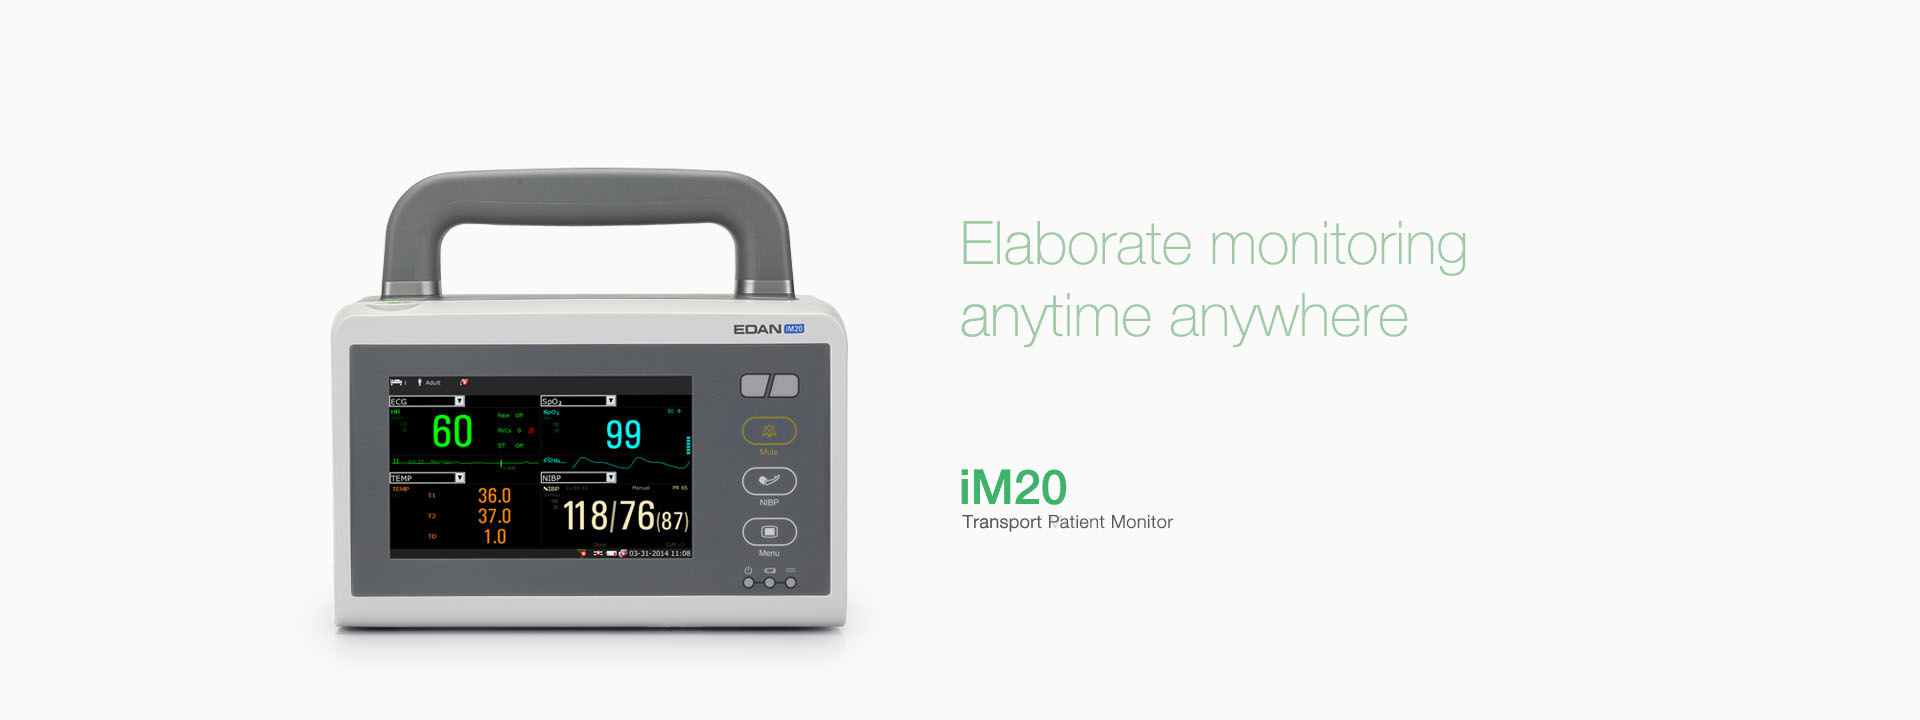 เครื่องติดตามการทำงานของหัวใจและสัญญาณชีพอัตโนมัติสำหรับการเคลื่อนย้ายผู้ป่วย  iM20 Transport Patient Monitor  EDAN